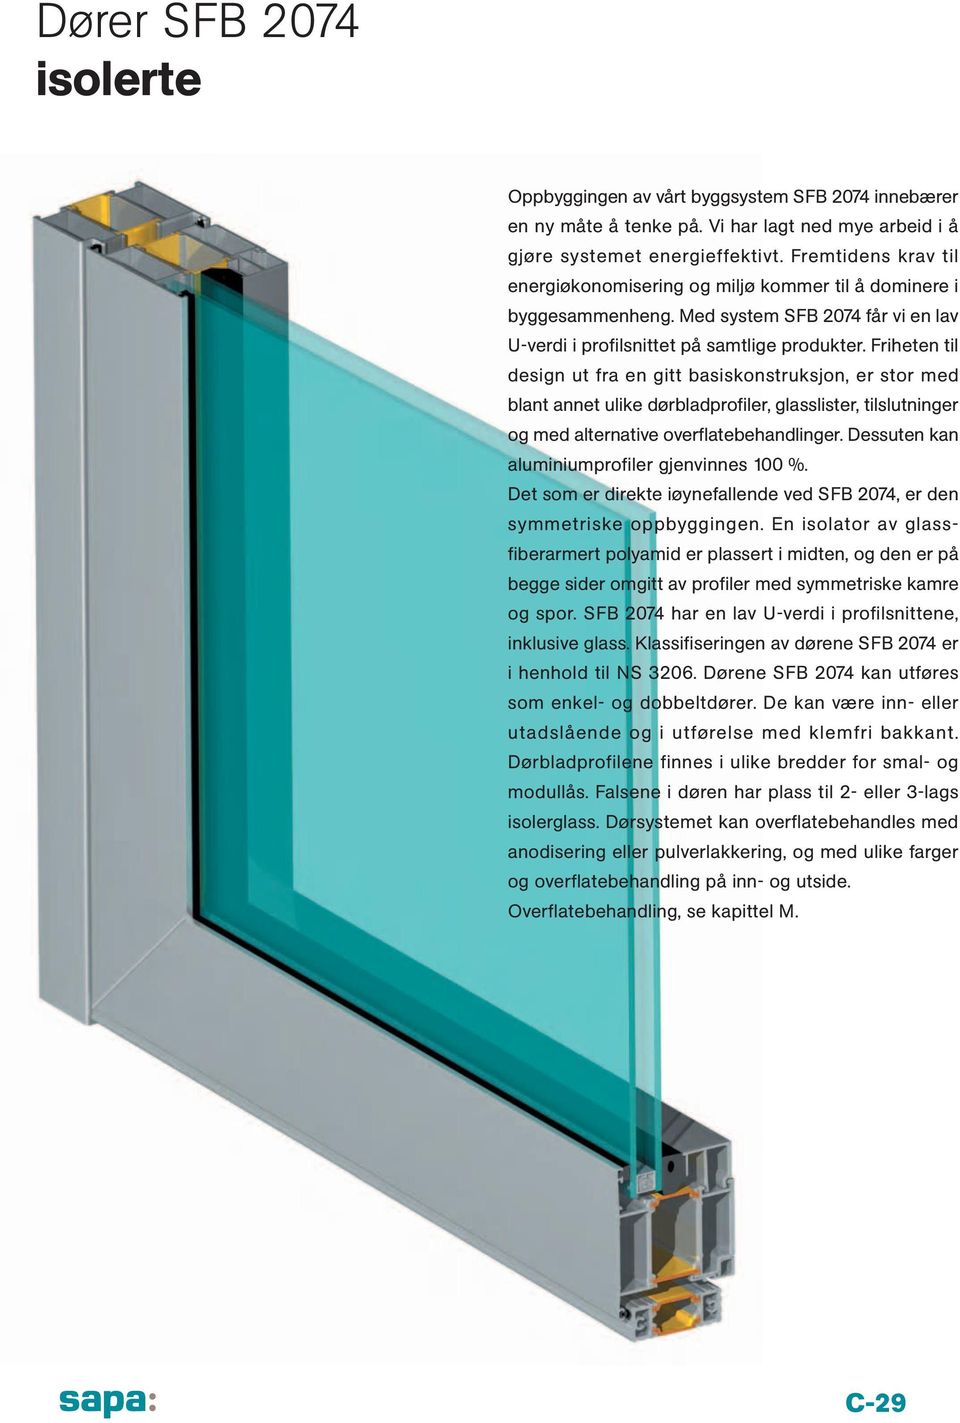 Friheten til design ut fra en gitt basiskonstruksjon, er stor med blant annet ulike dørbladprofiler, glasslister, tilslutninger og med alternative overflatebehandlinger.